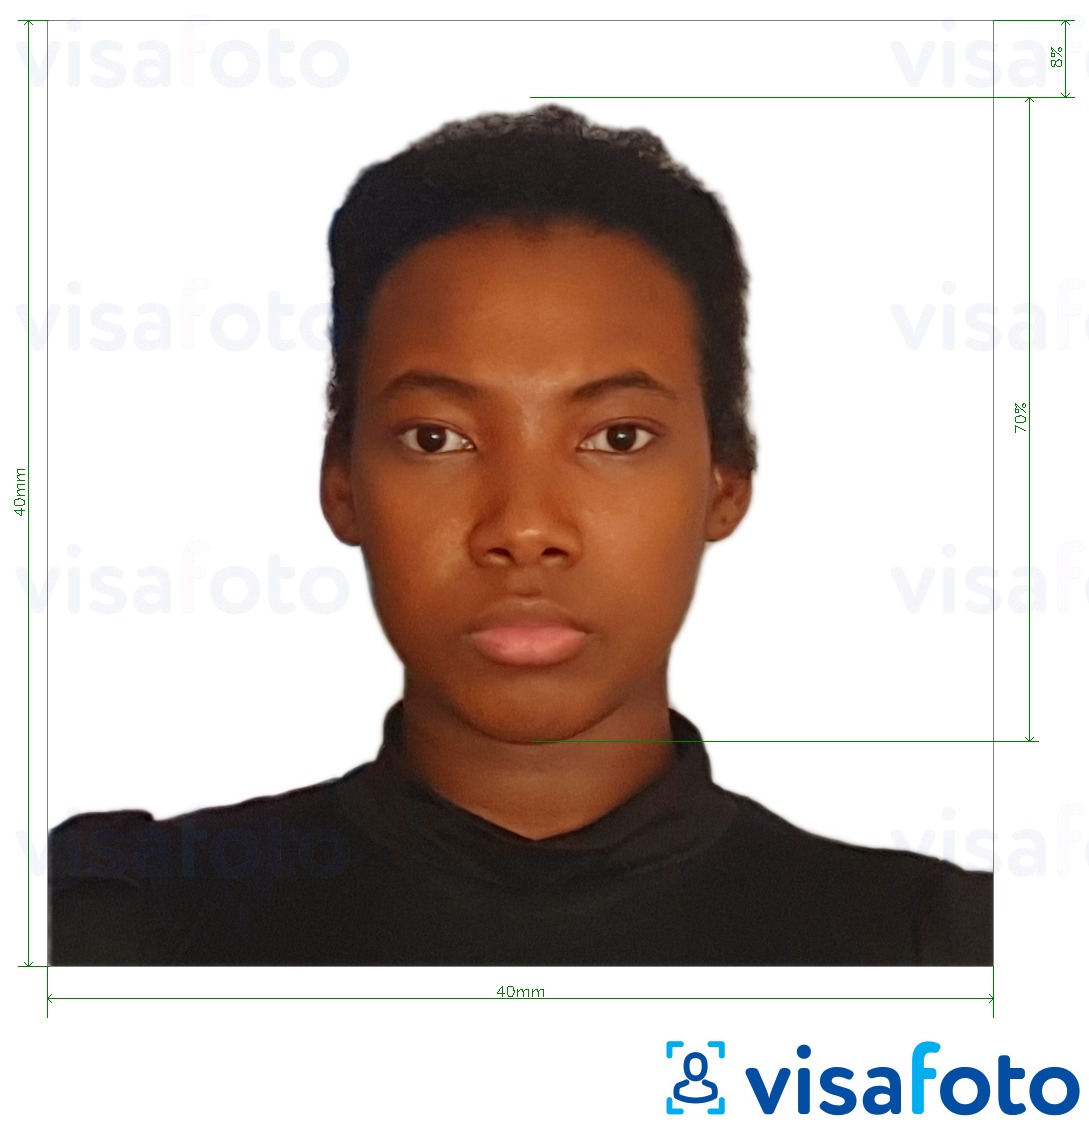 Exemplu de fotografie pentru Pașaport Madagascar 40x40 mm cu aceeași dimensiune indicată